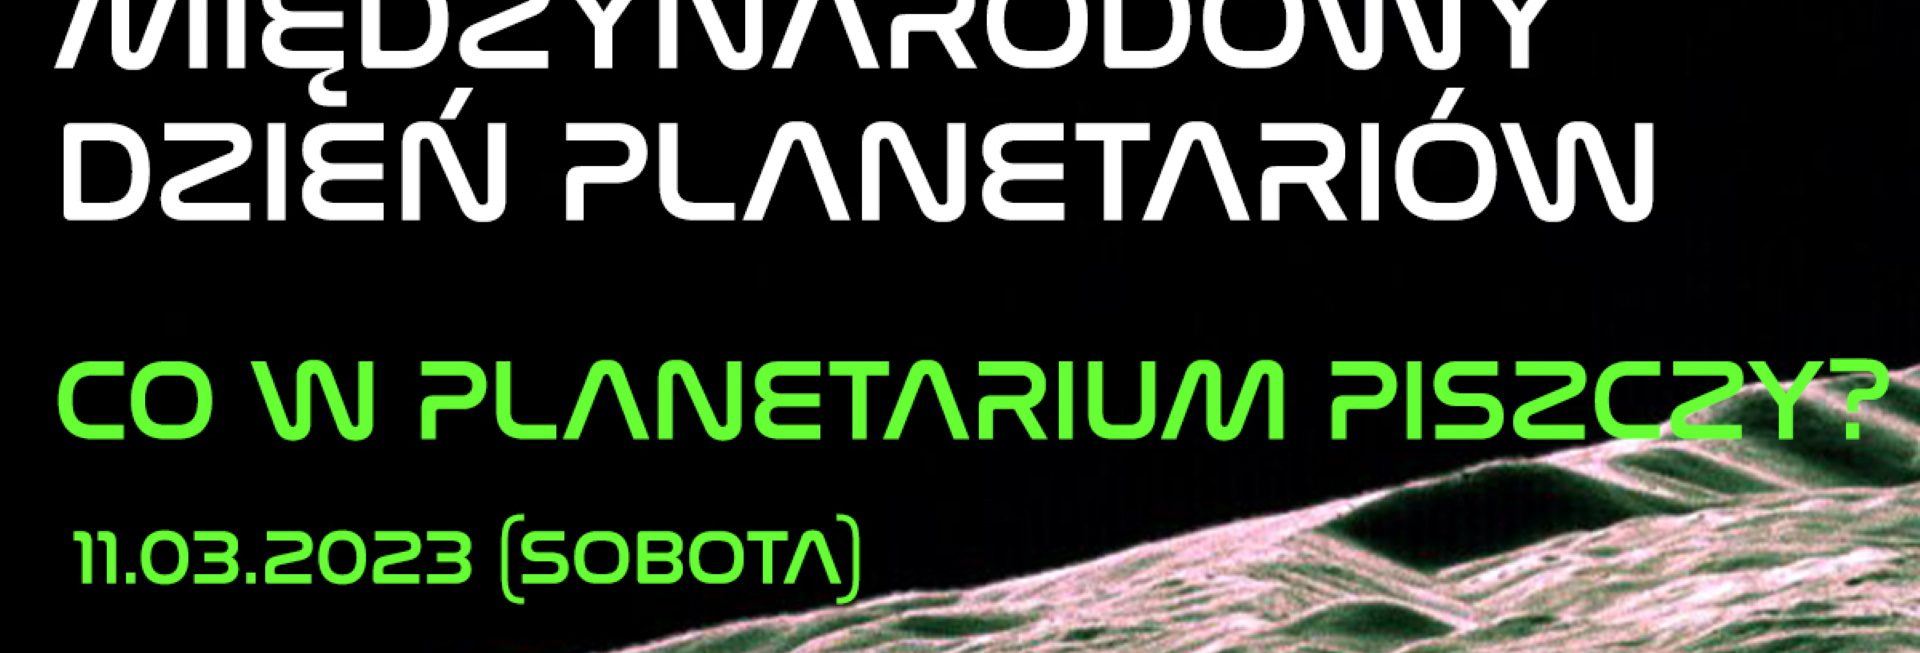 Plakat zapraszający w piątek 11 marca 2023 r. do Olsztyńskiego Planetarium na Międzynarodowy Dzień Planetariów PLANETARIUM Olsztyn 2023.